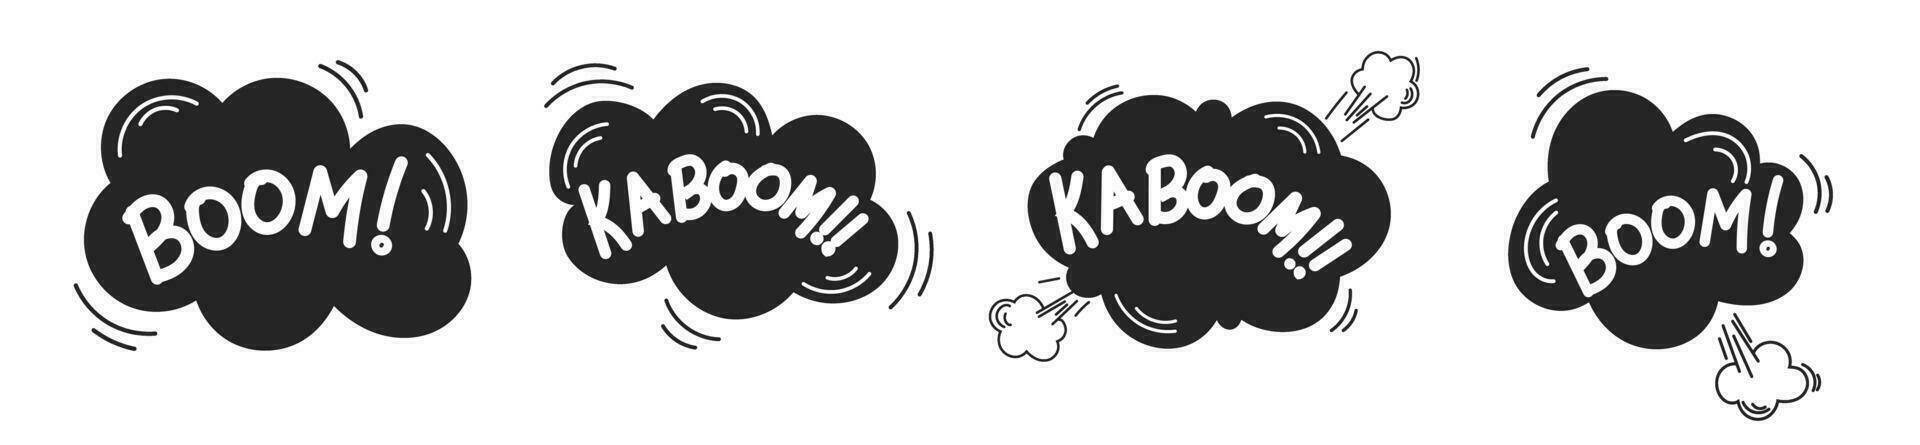 boom kaboom comico esplodere effetto cartone animato mano disegno scarabocchio vettore